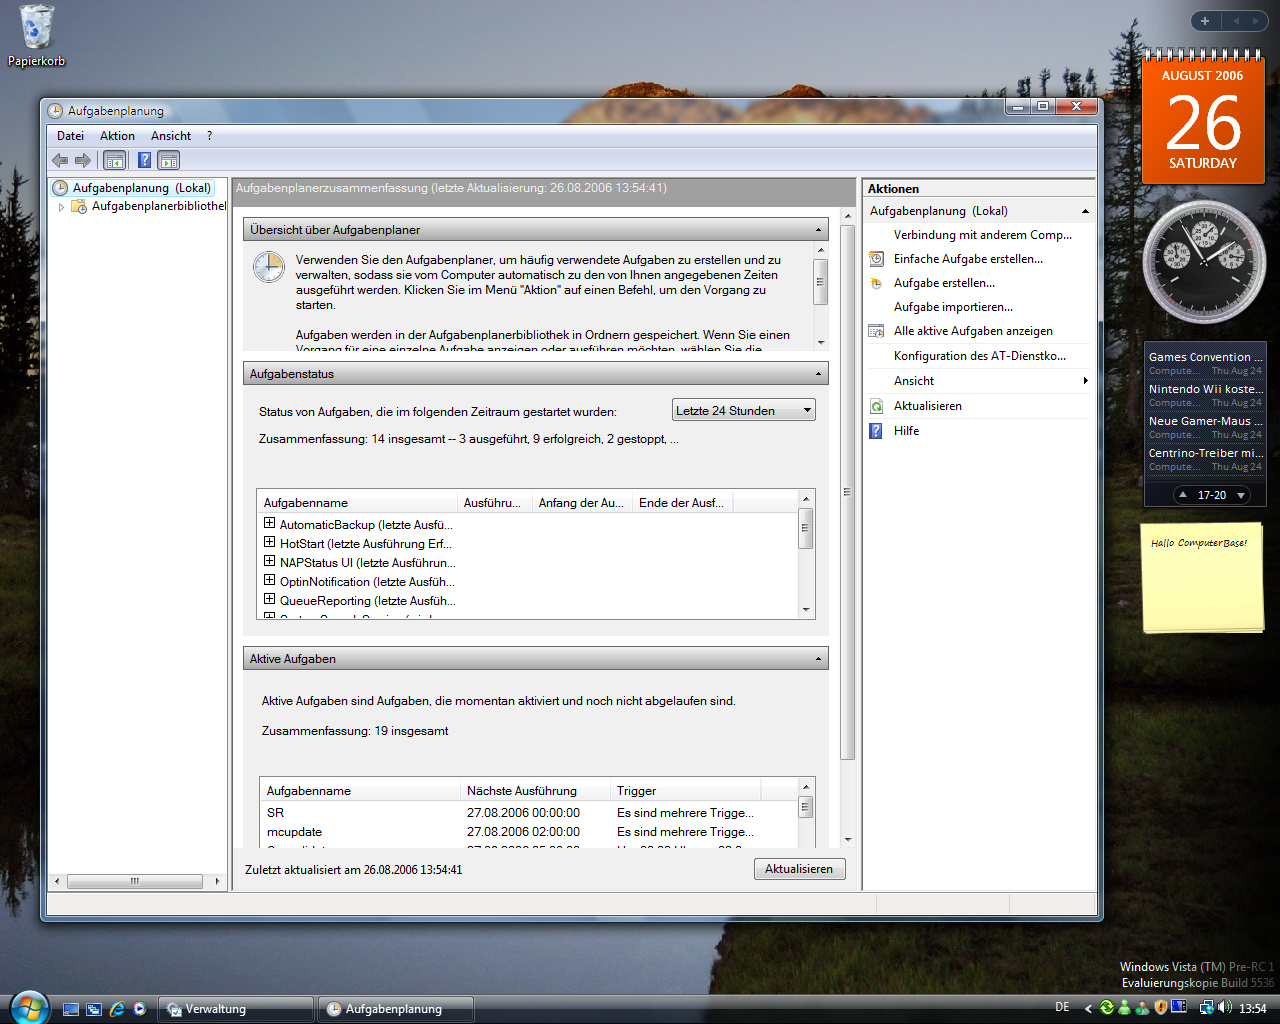 Windows Vista Build 5536 - Aufgabenplanung